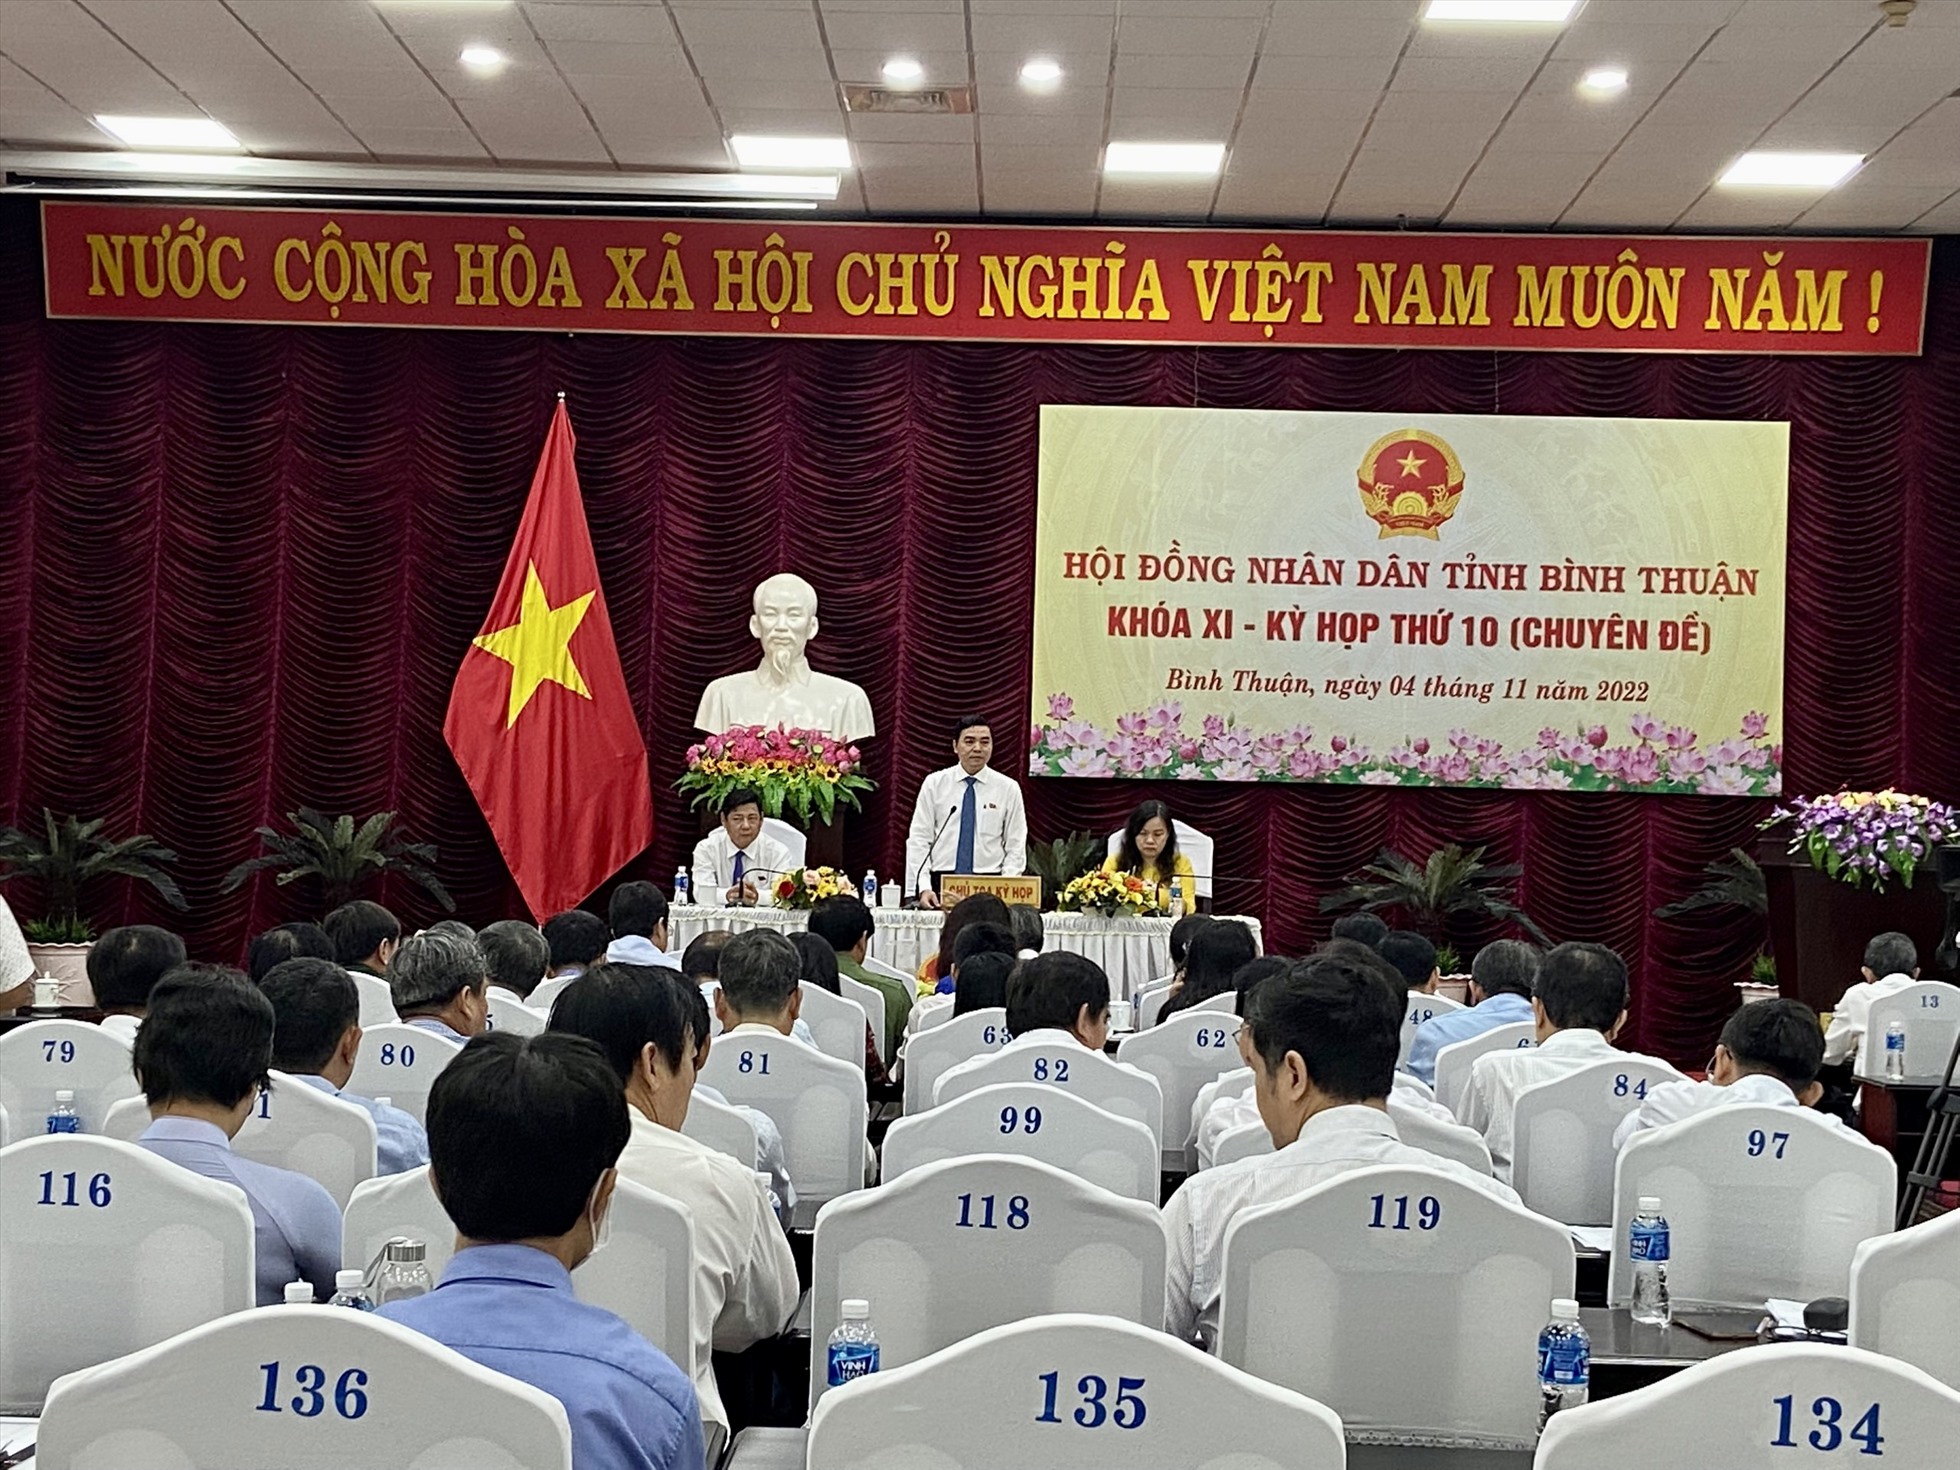 Sáng ngày 4.11, cuộc họp chuyên đề của HĐND tỉnh Bình Thuận được diễn ra. Ảnh: DT